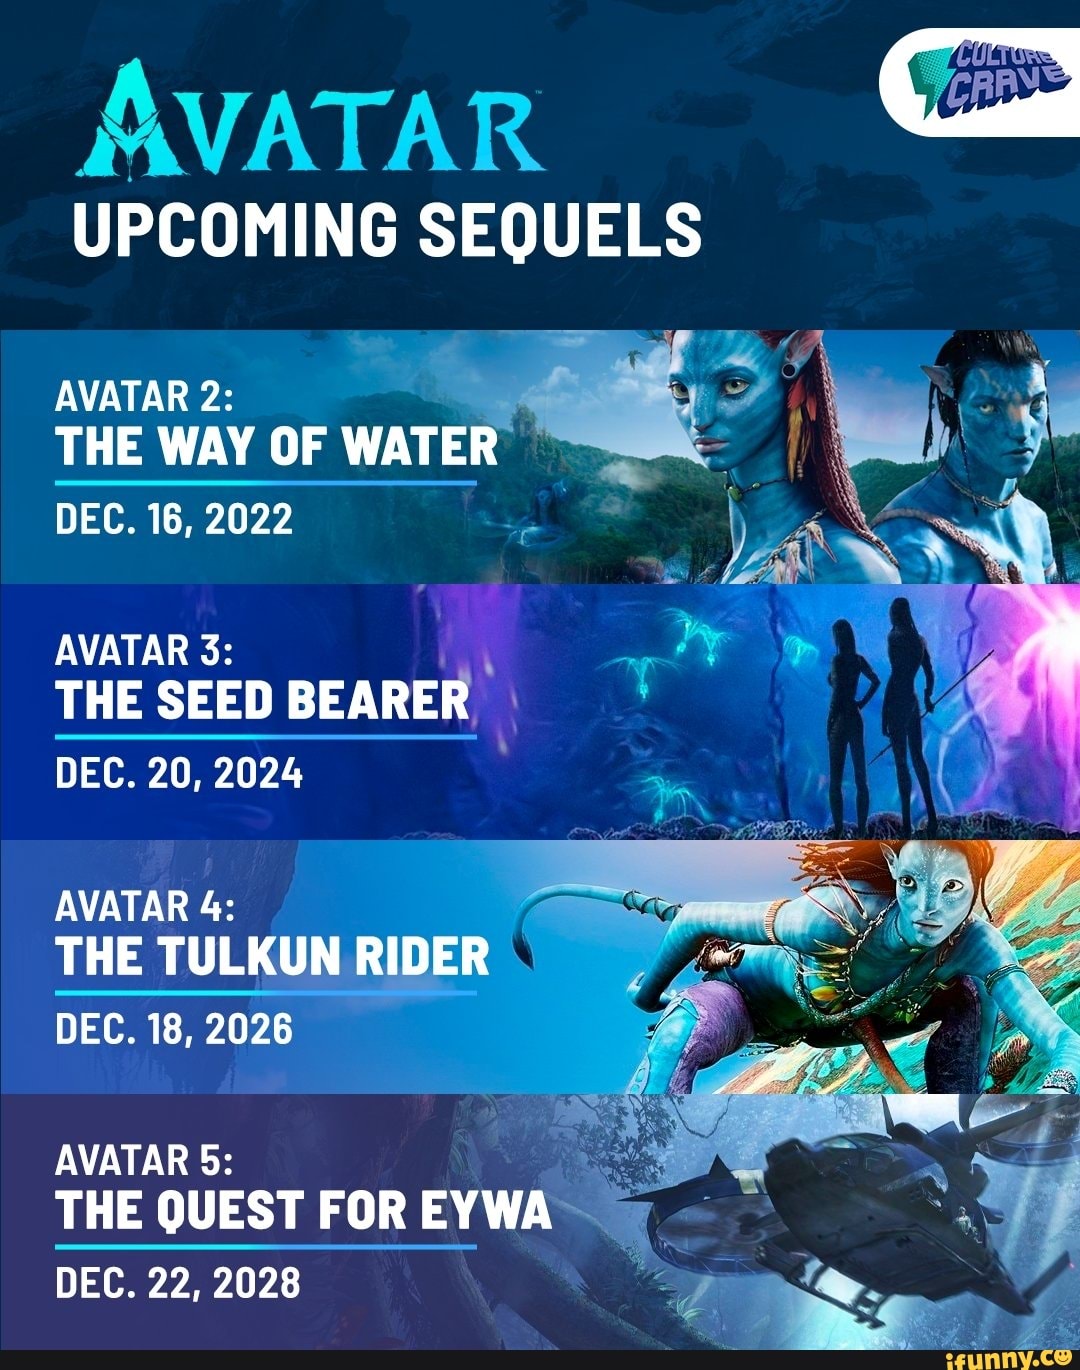 Avatar 2 đã có ngày ra mắt chính thức, đánh dấu sự trở lại của chuỗi phim hấp dẫn này. Với những cảnh quay hoành tráng và kỹ xảo đỉnh cao, Avatar 2 hứa hẹn sẽ mang lại những trải nghiệm tuyệt vời nhất cho khán giả.